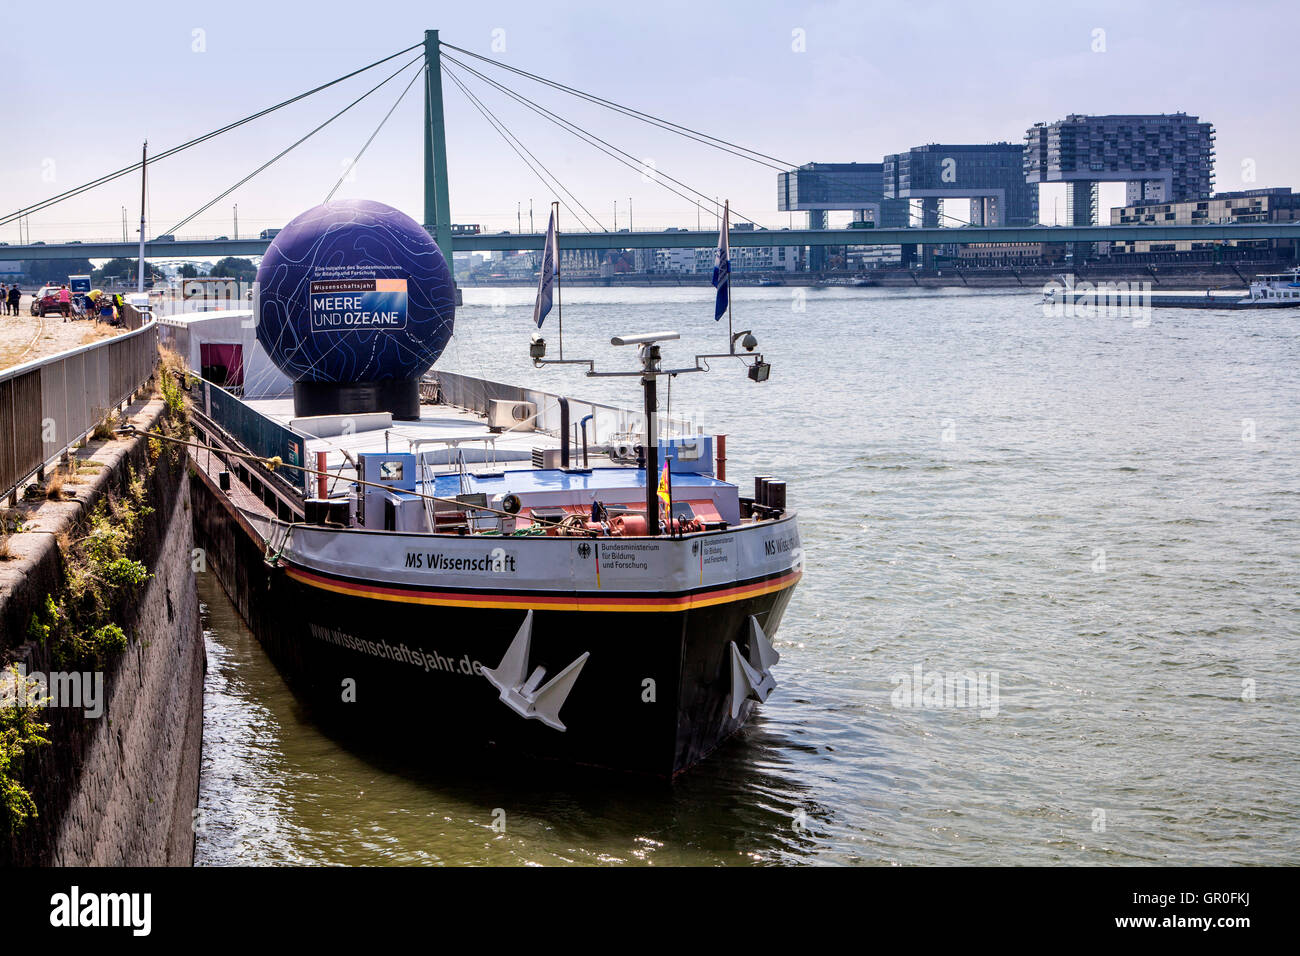 Deutschland, Köln, Messe-Schiff MS Wissenschaft (MS Schience. Auf dem Schiff zeigt die Welt der Meere und Ozeane. Stockfoto